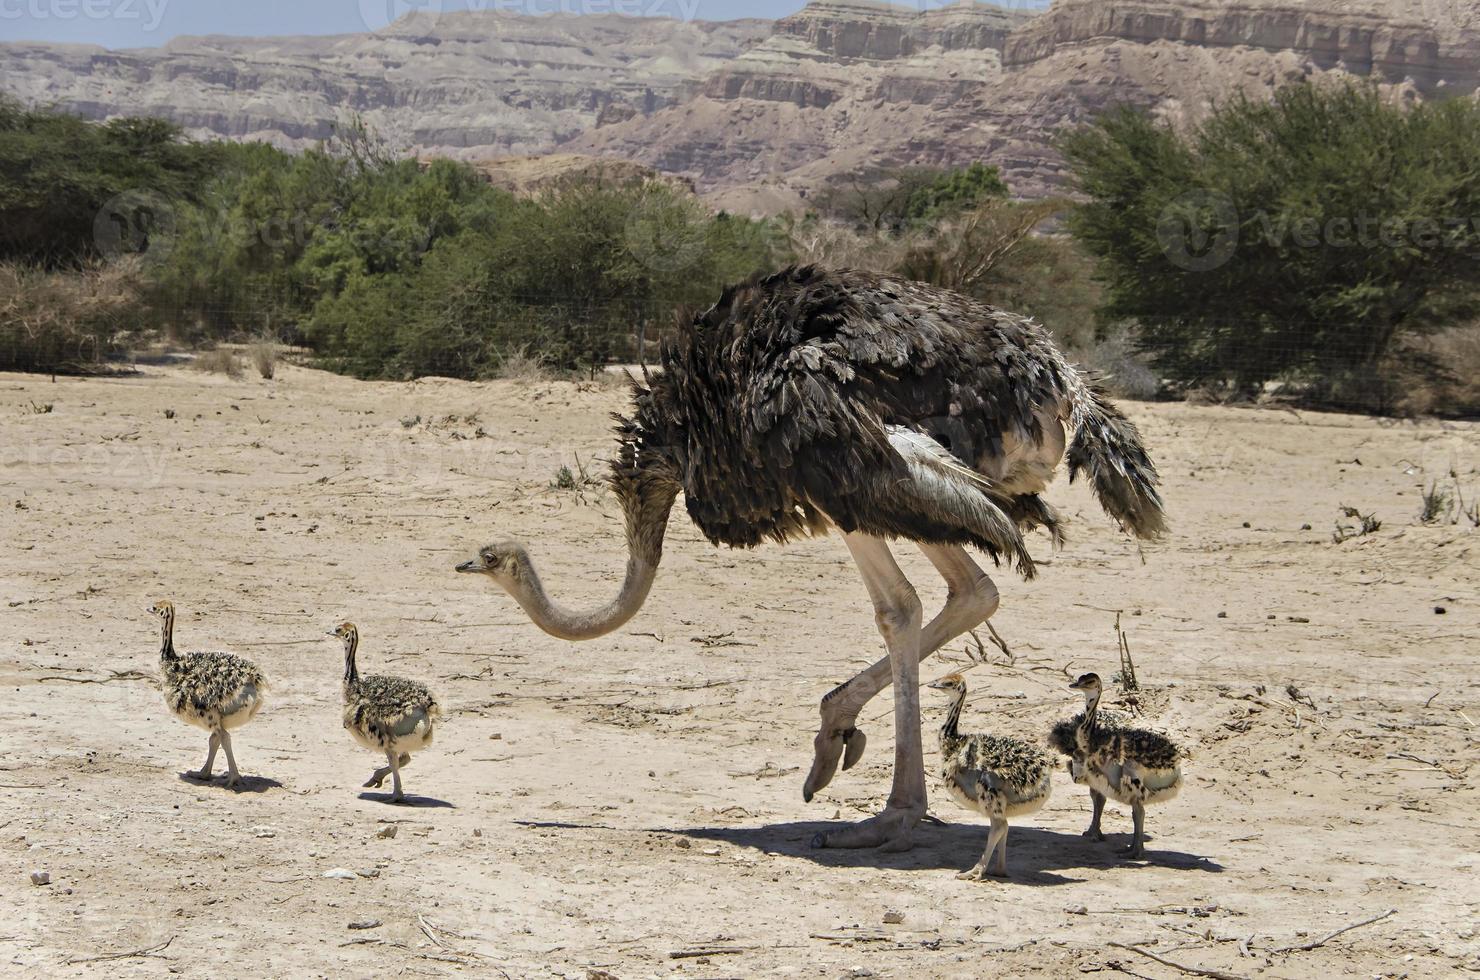 vrouwtje van Afrikaanse struisvogel met zijn jonge kuikens foto